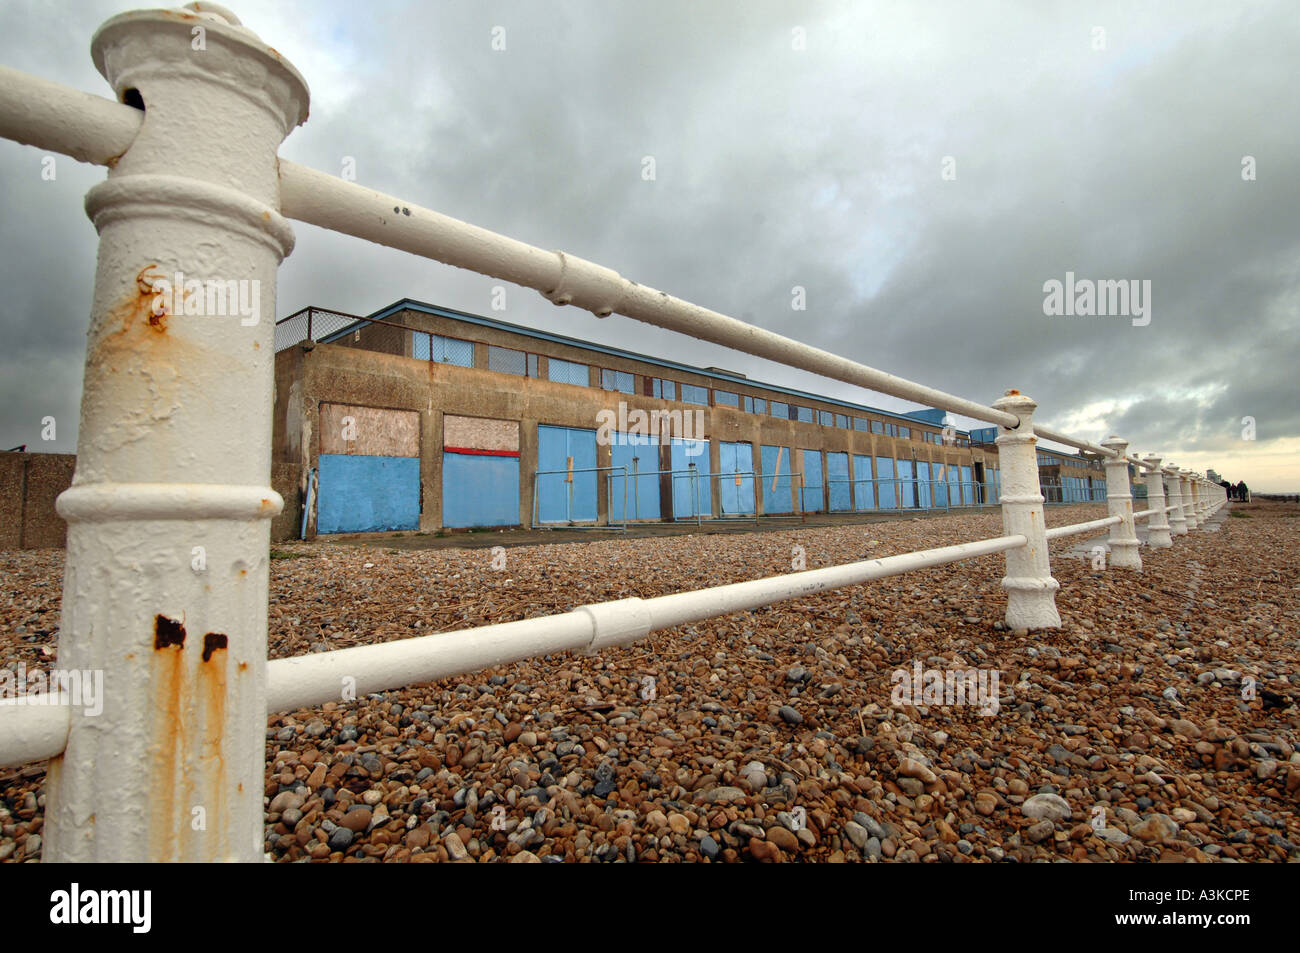 "St Leonards" Hastings England UK Großbritannien Englisch Seaside Resort schäbig verfallenden "unten an der Ferse" schäbig ungepflegt traurig vernachlässigte Poig Stockfoto